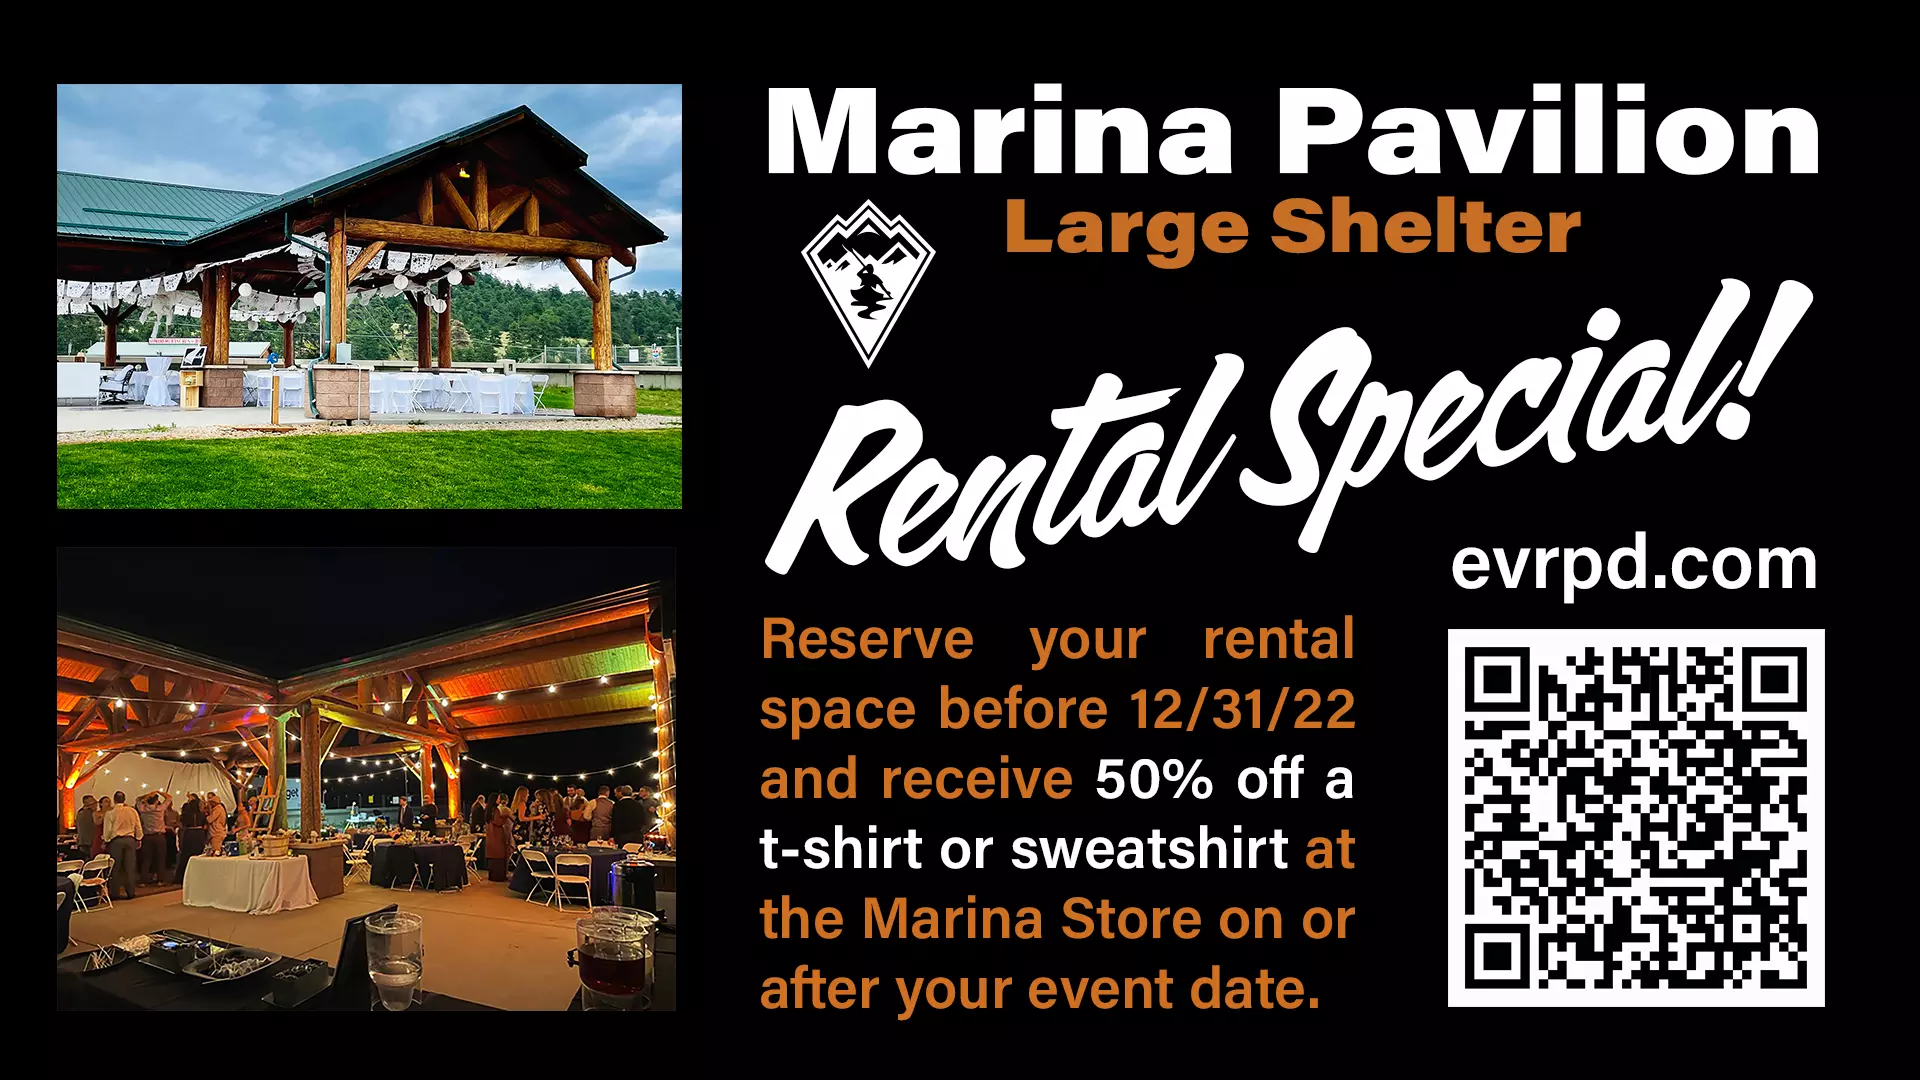 Large Shelter at the Marina Pavilion